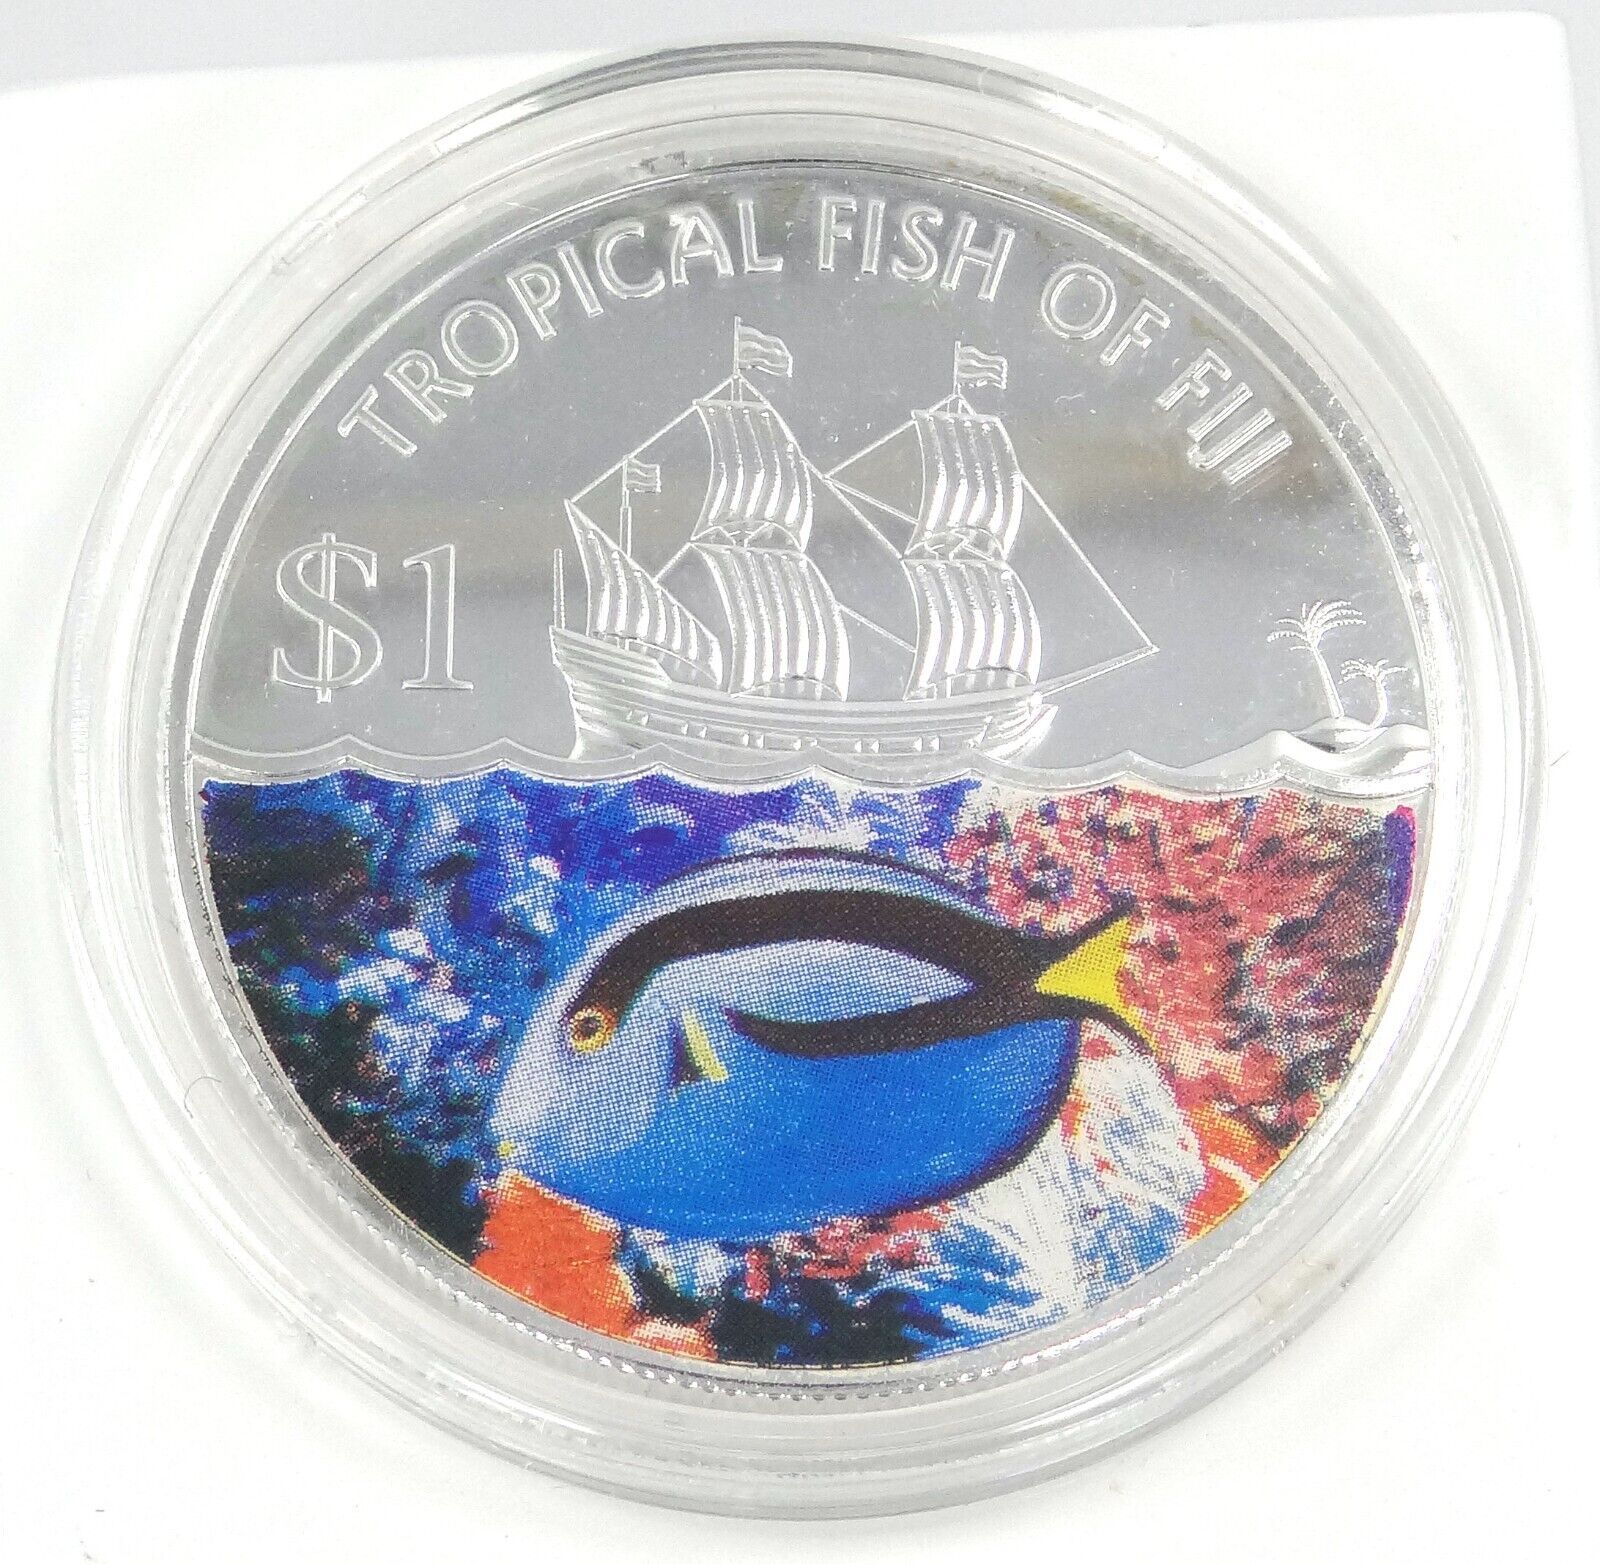 25g Silver Coin 2009 Fiji $1 Tropical Fish of Fiji Damsel Fish 